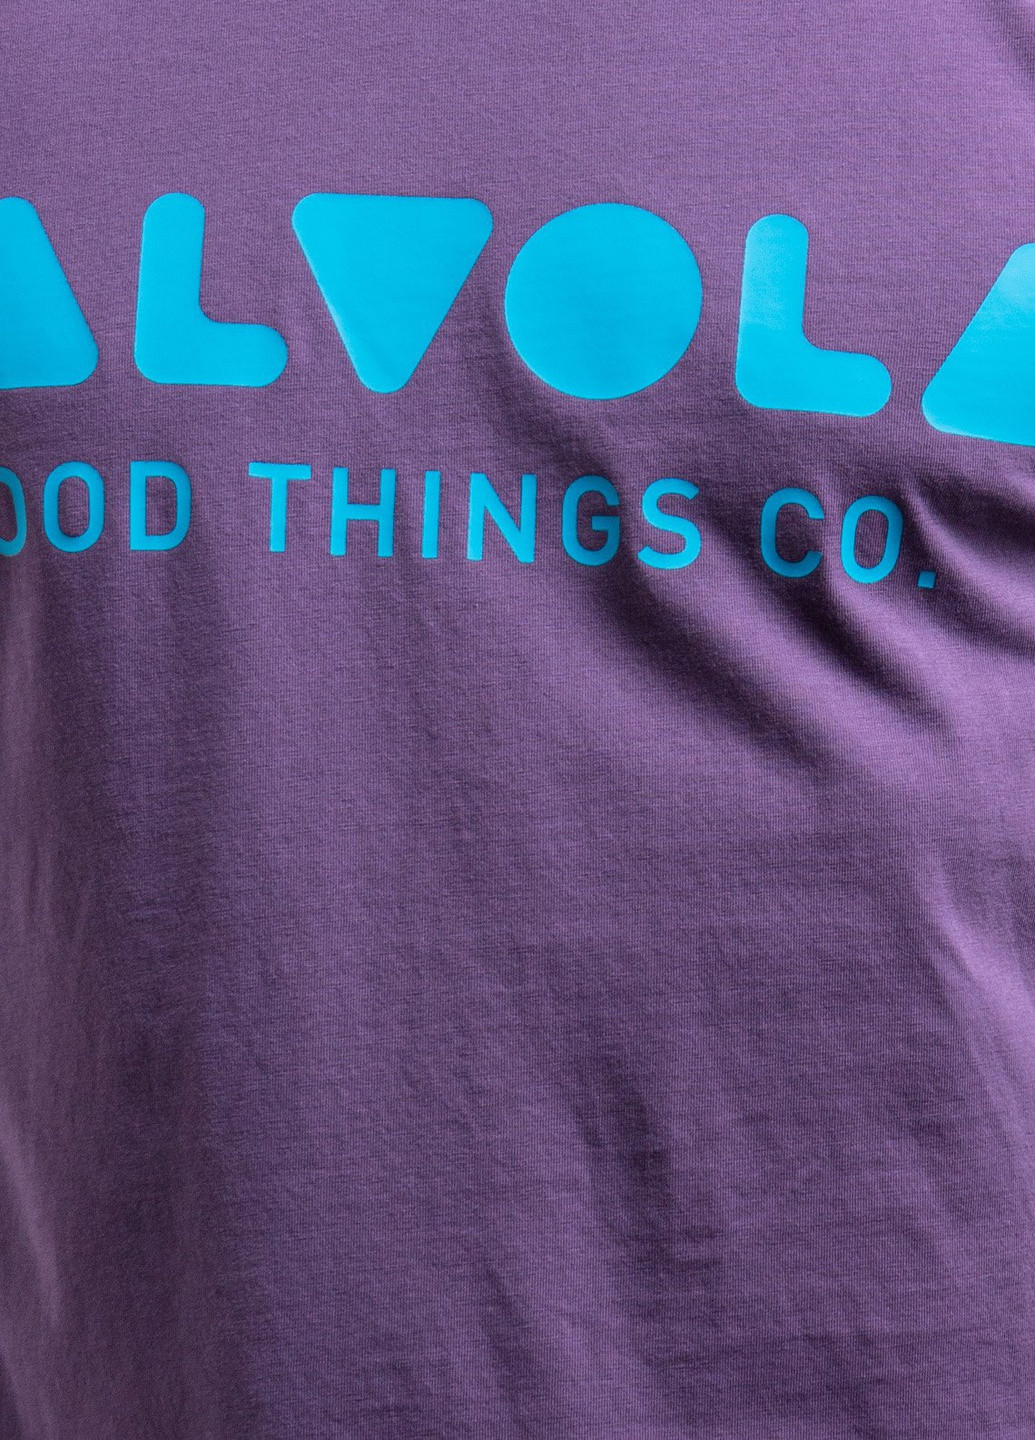 Фиолетовая черная футболка с логотипом Valvola